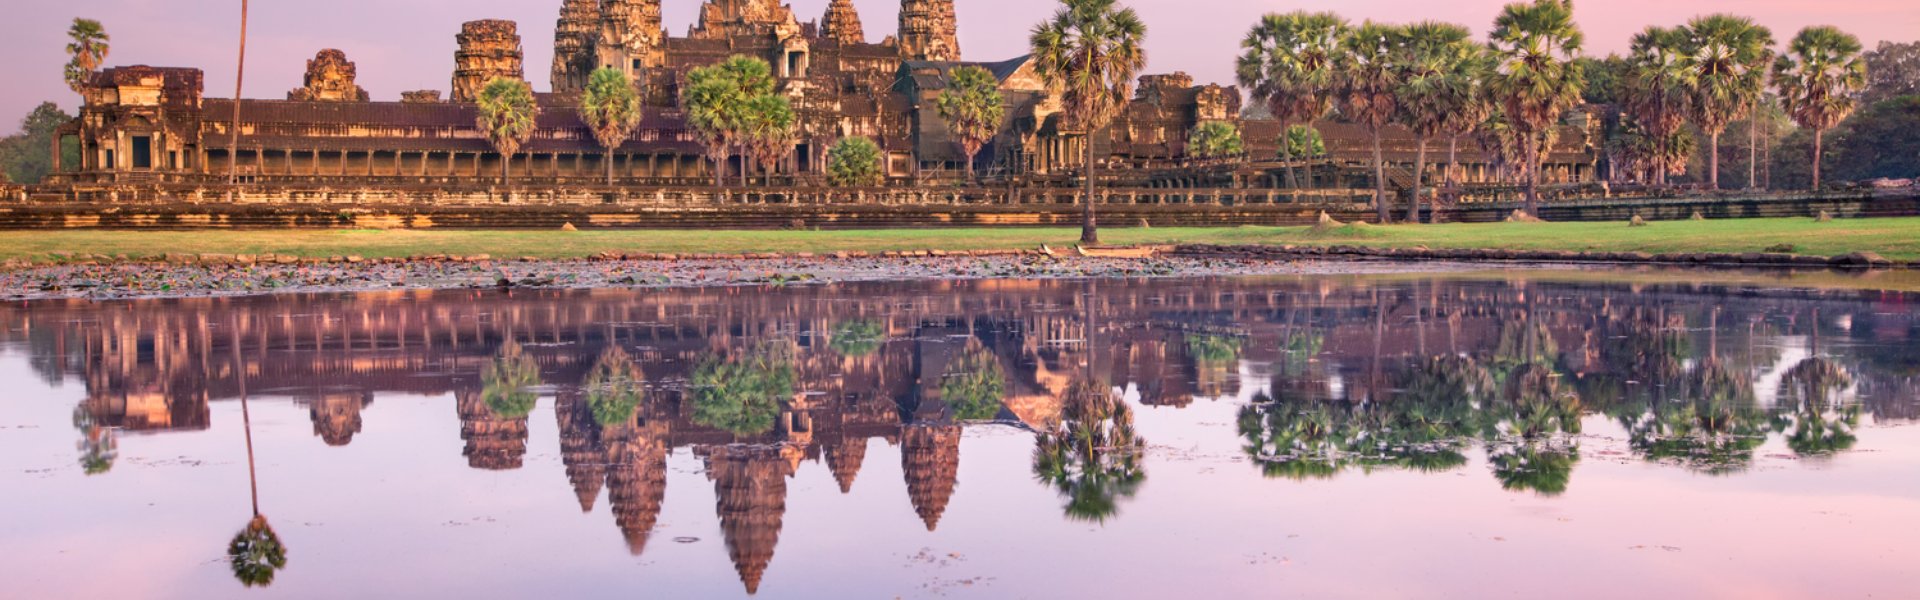 testata Cambogia tra sapori e cultura